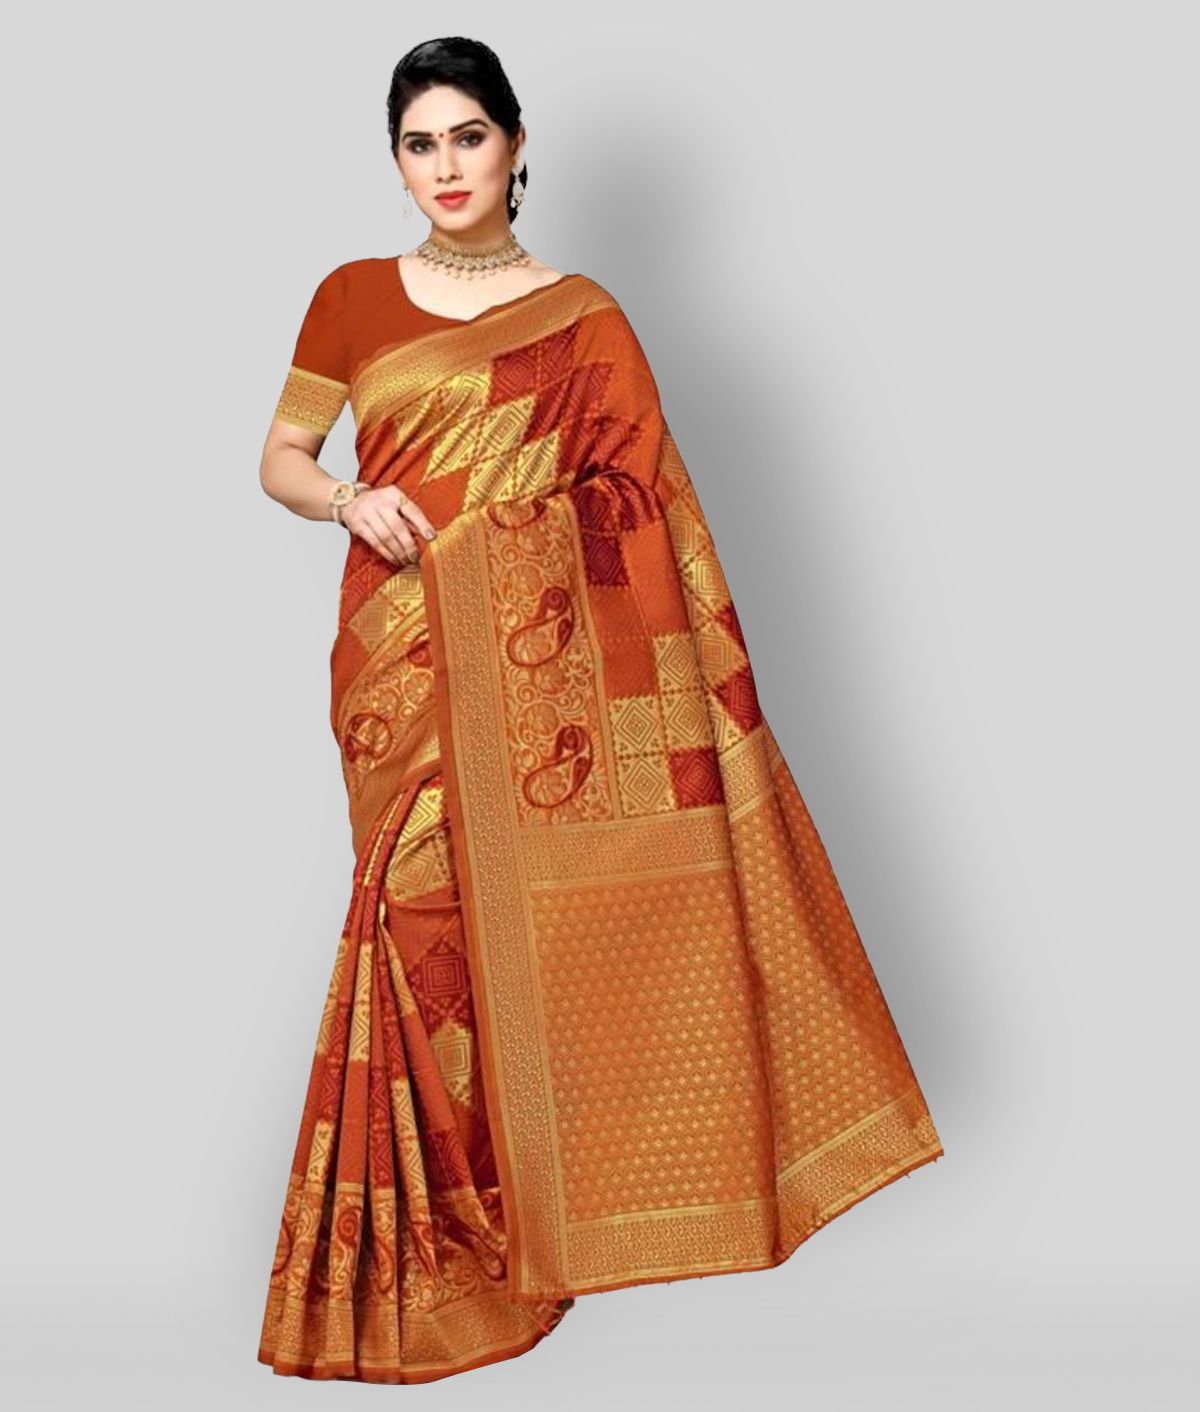 NENCY FASHION - Orange Banarasi Silk Saree With Blouse Piece (Pack of 1)